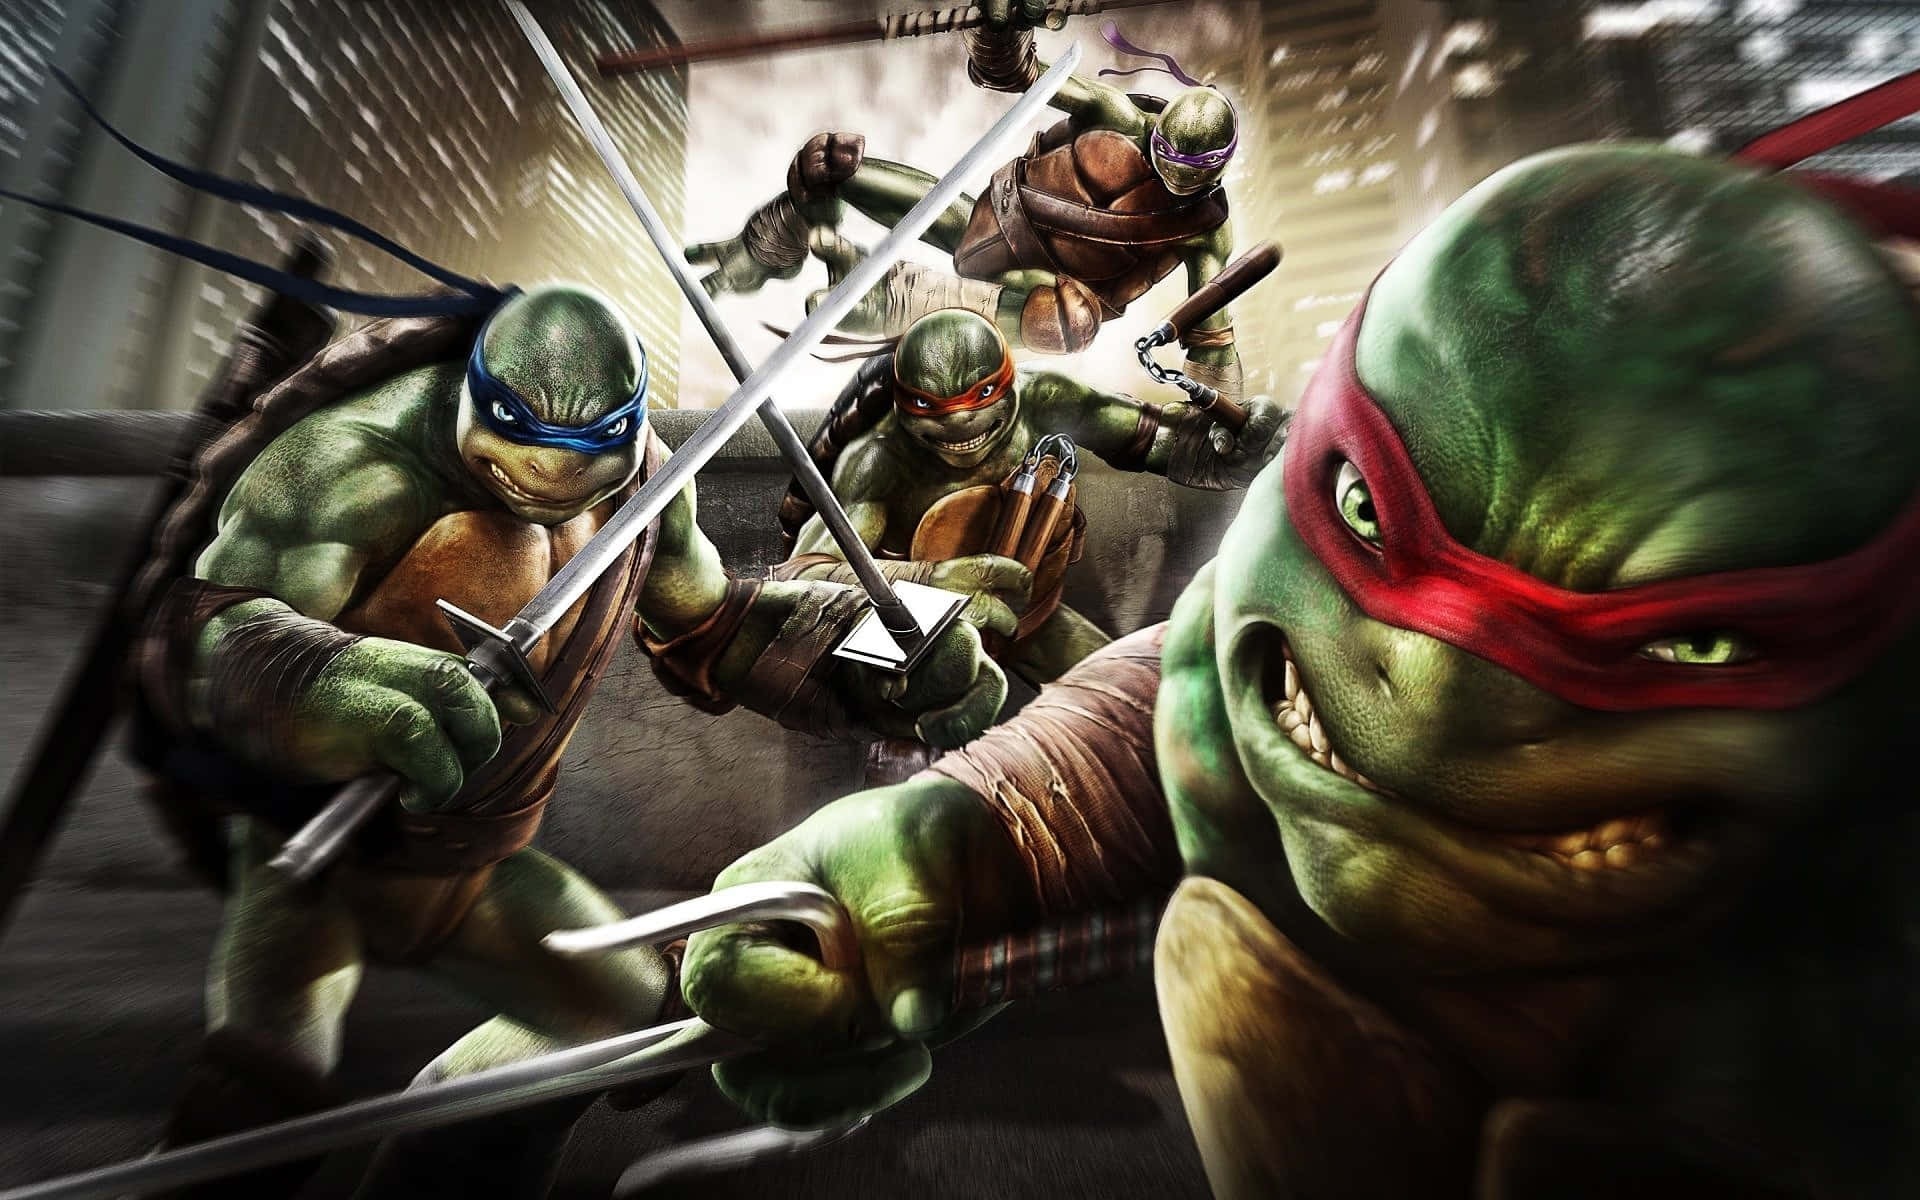 Defire Ninja Turtles Er Klar Til At Kæmpe Mod Det Onde.